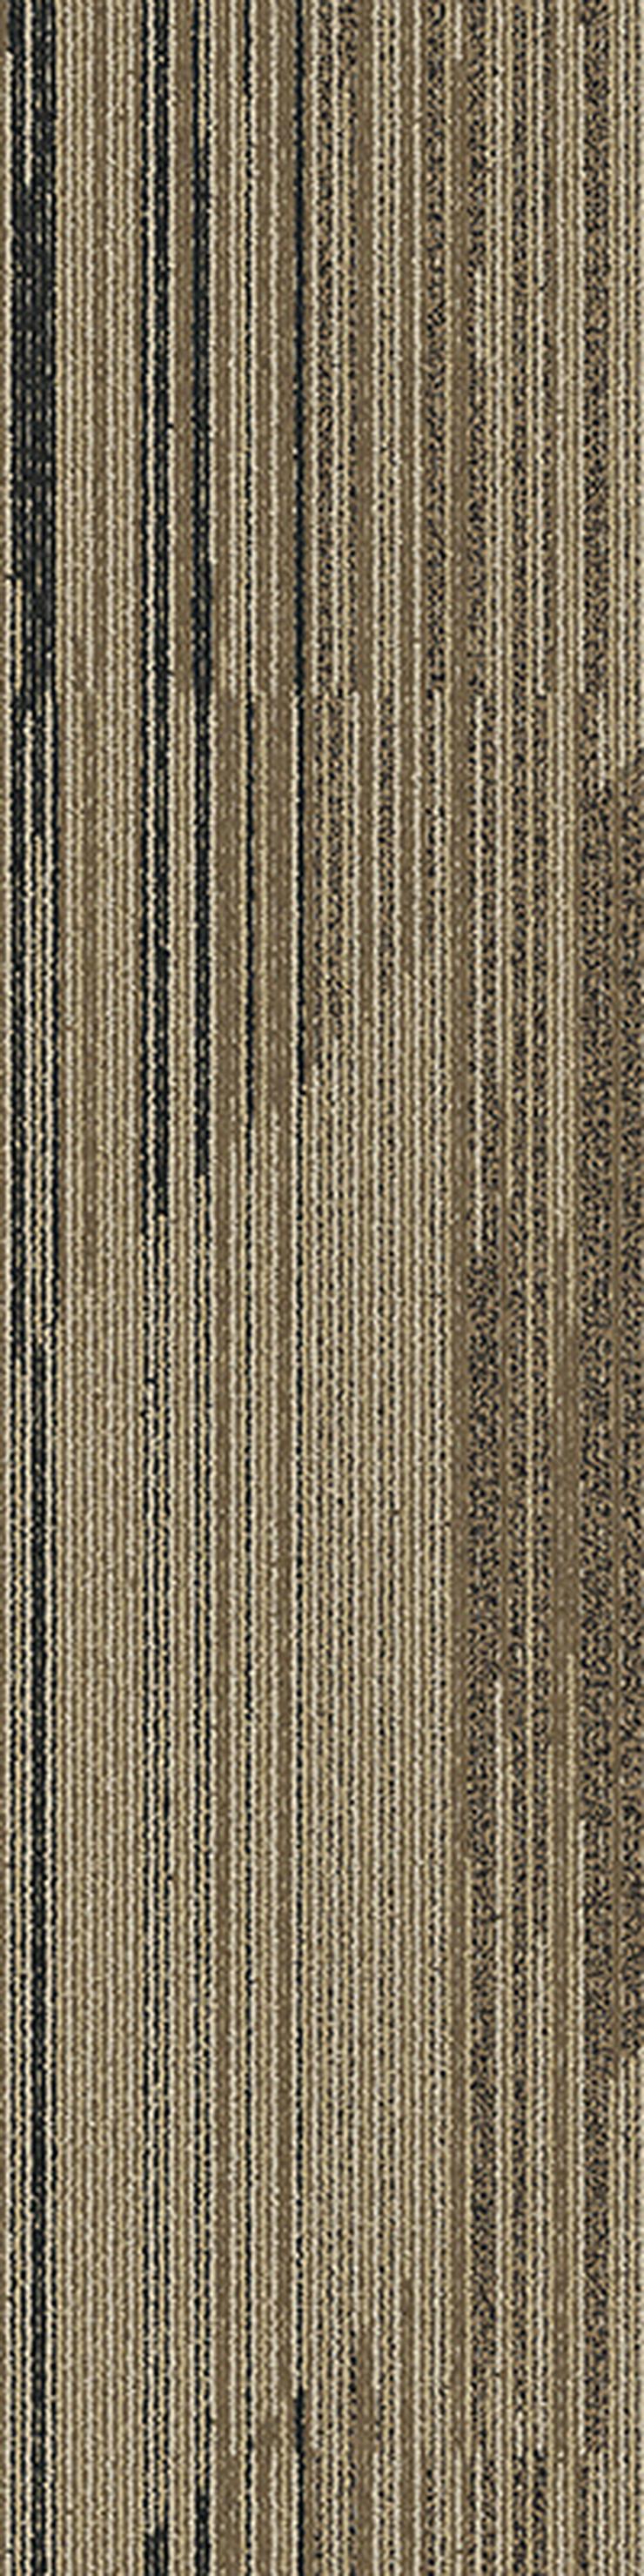 Gestreifte 'Laminat' Teppichfliesen. Bodenbelag in Grau und Braun - Teppiche - Bild 7